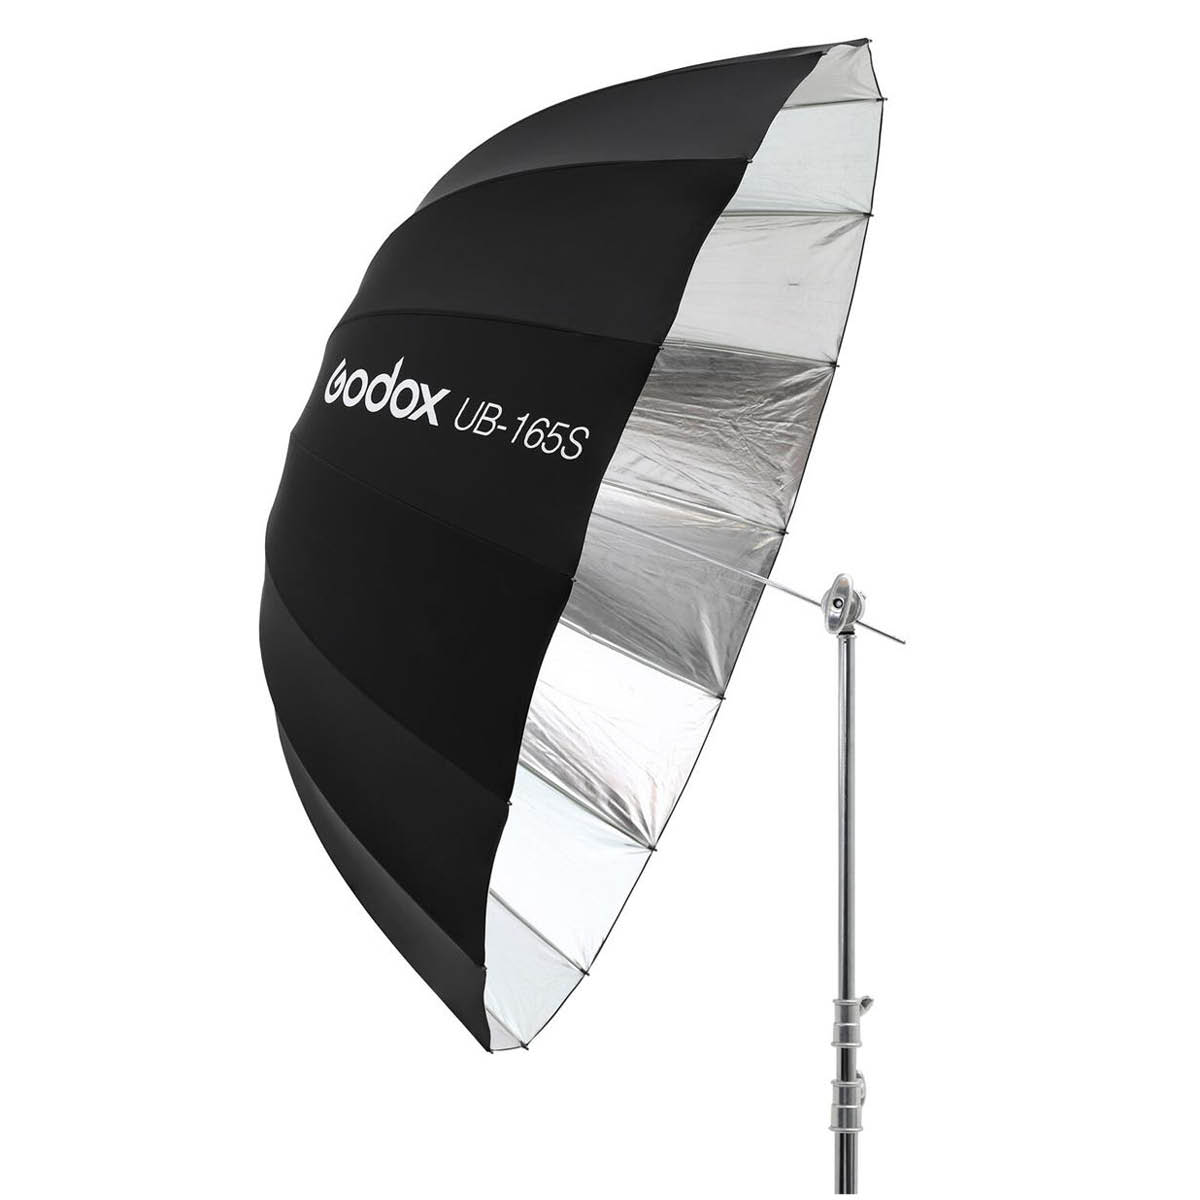 Godox Parabolschirm 165 cm schwarz/silber